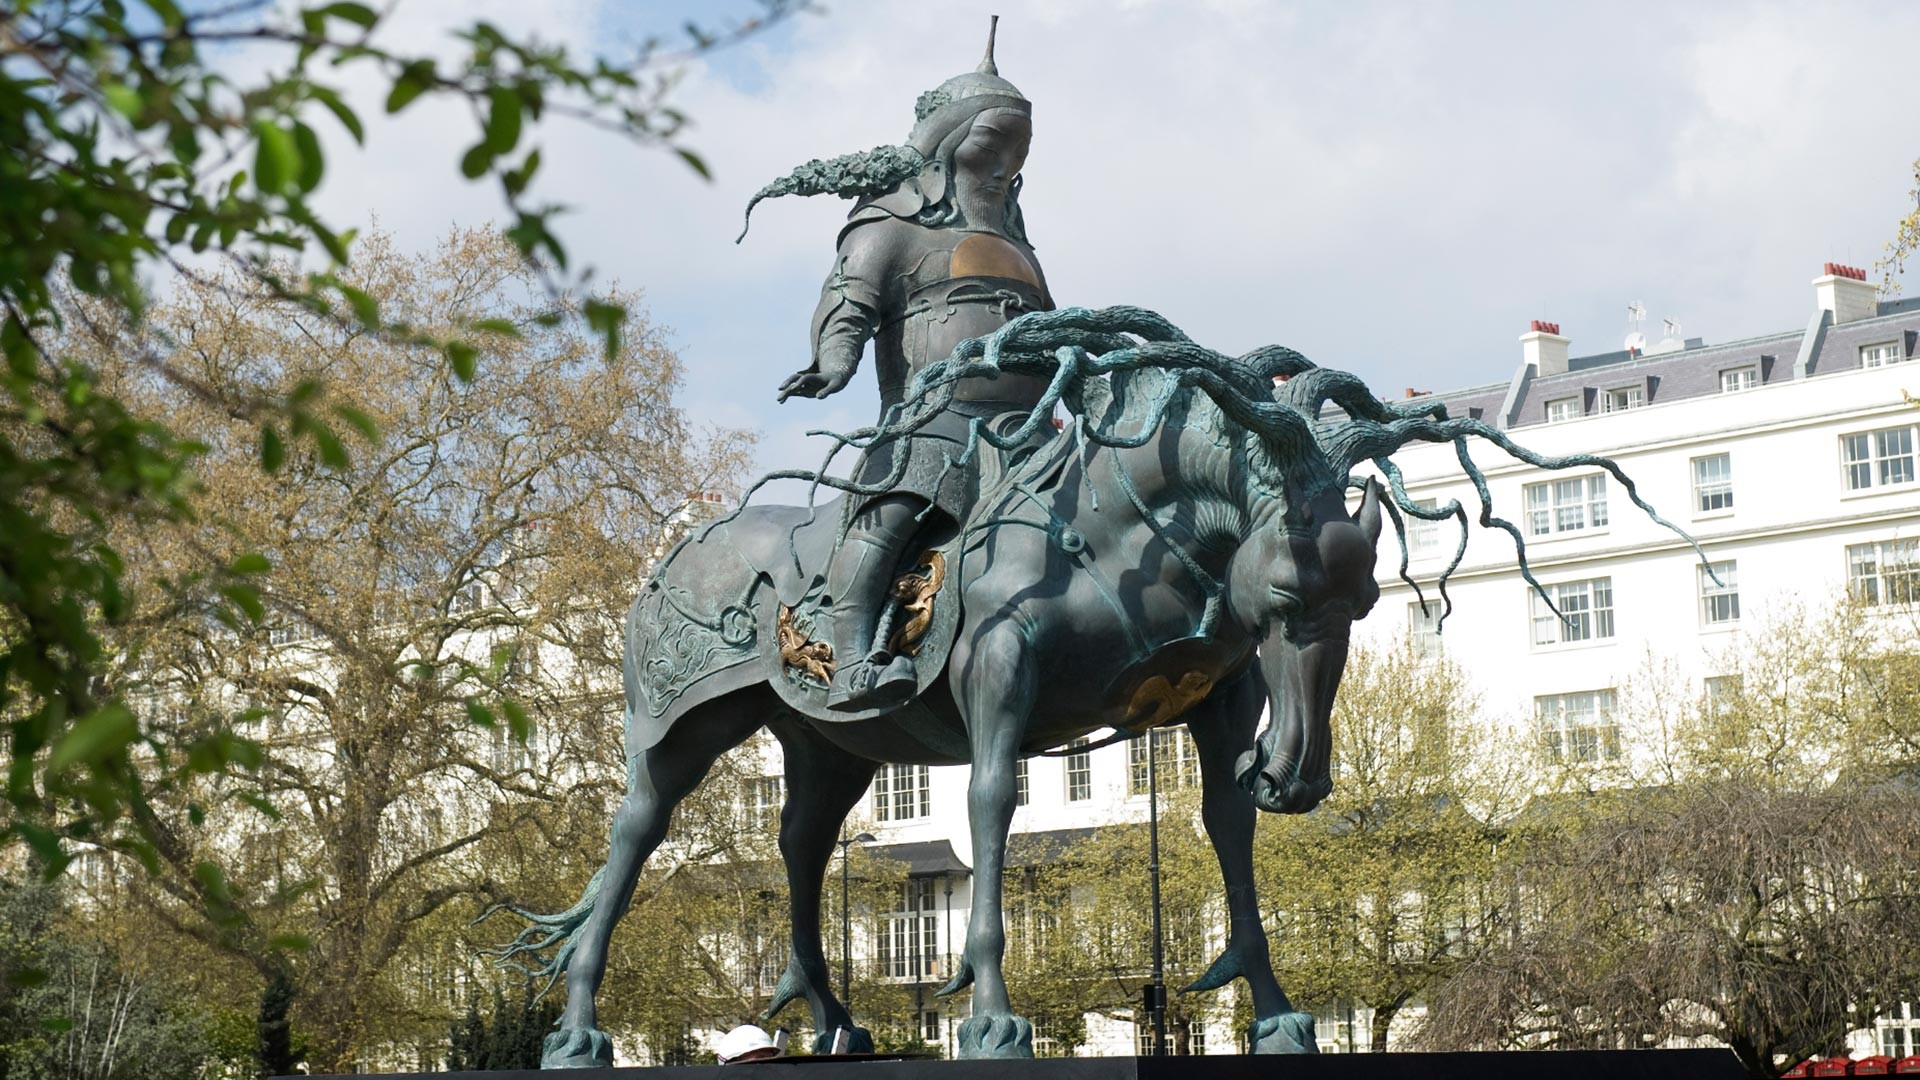 Тази скулптура на Чингис хан е изложена две години в лондонския Хайд парк